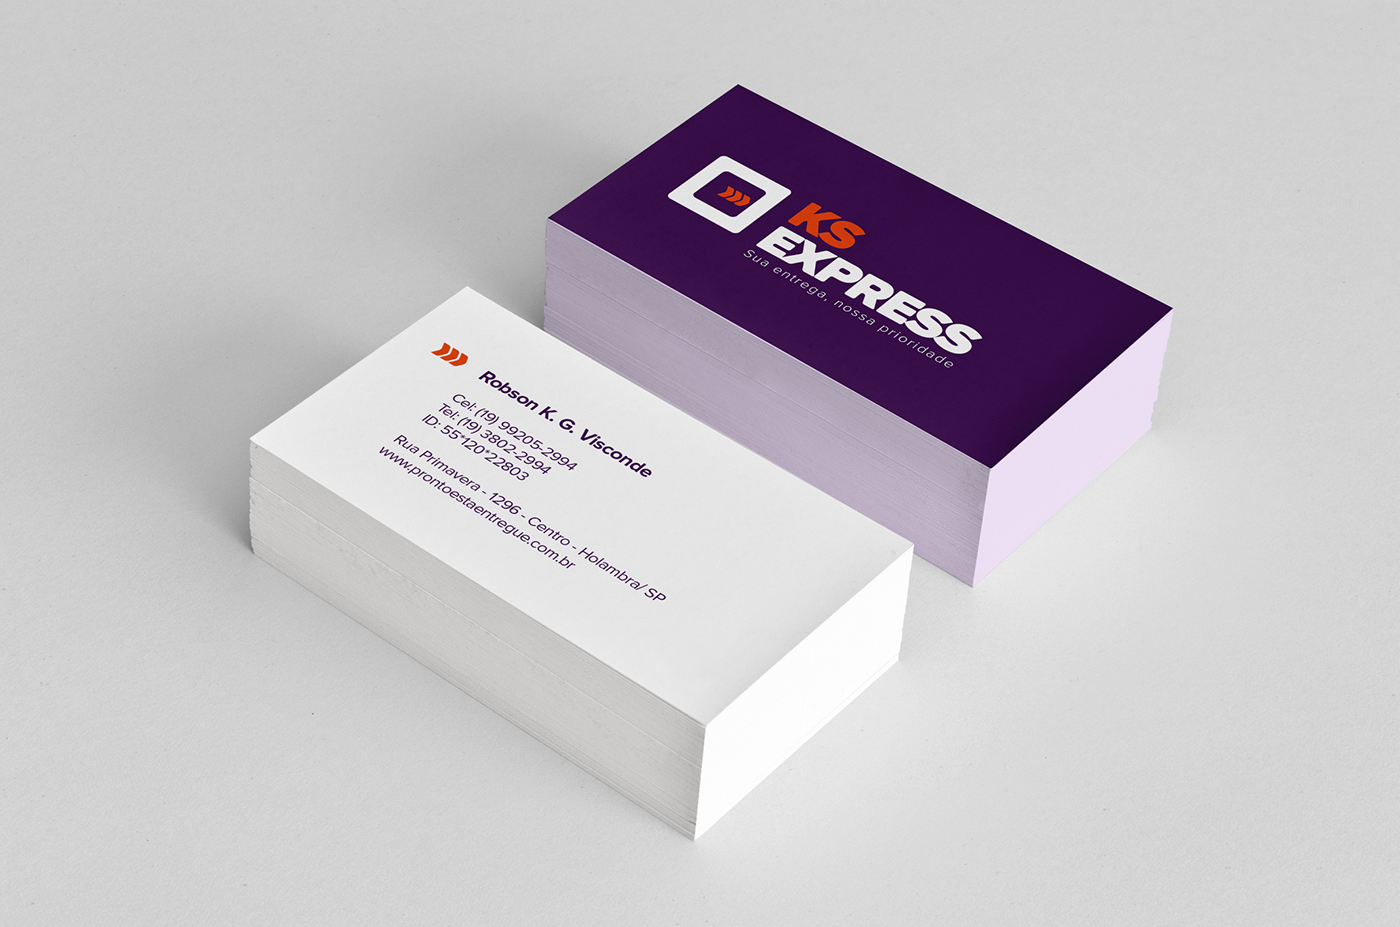 KS express logo papelaria cartão envelope uniforme identidade visual